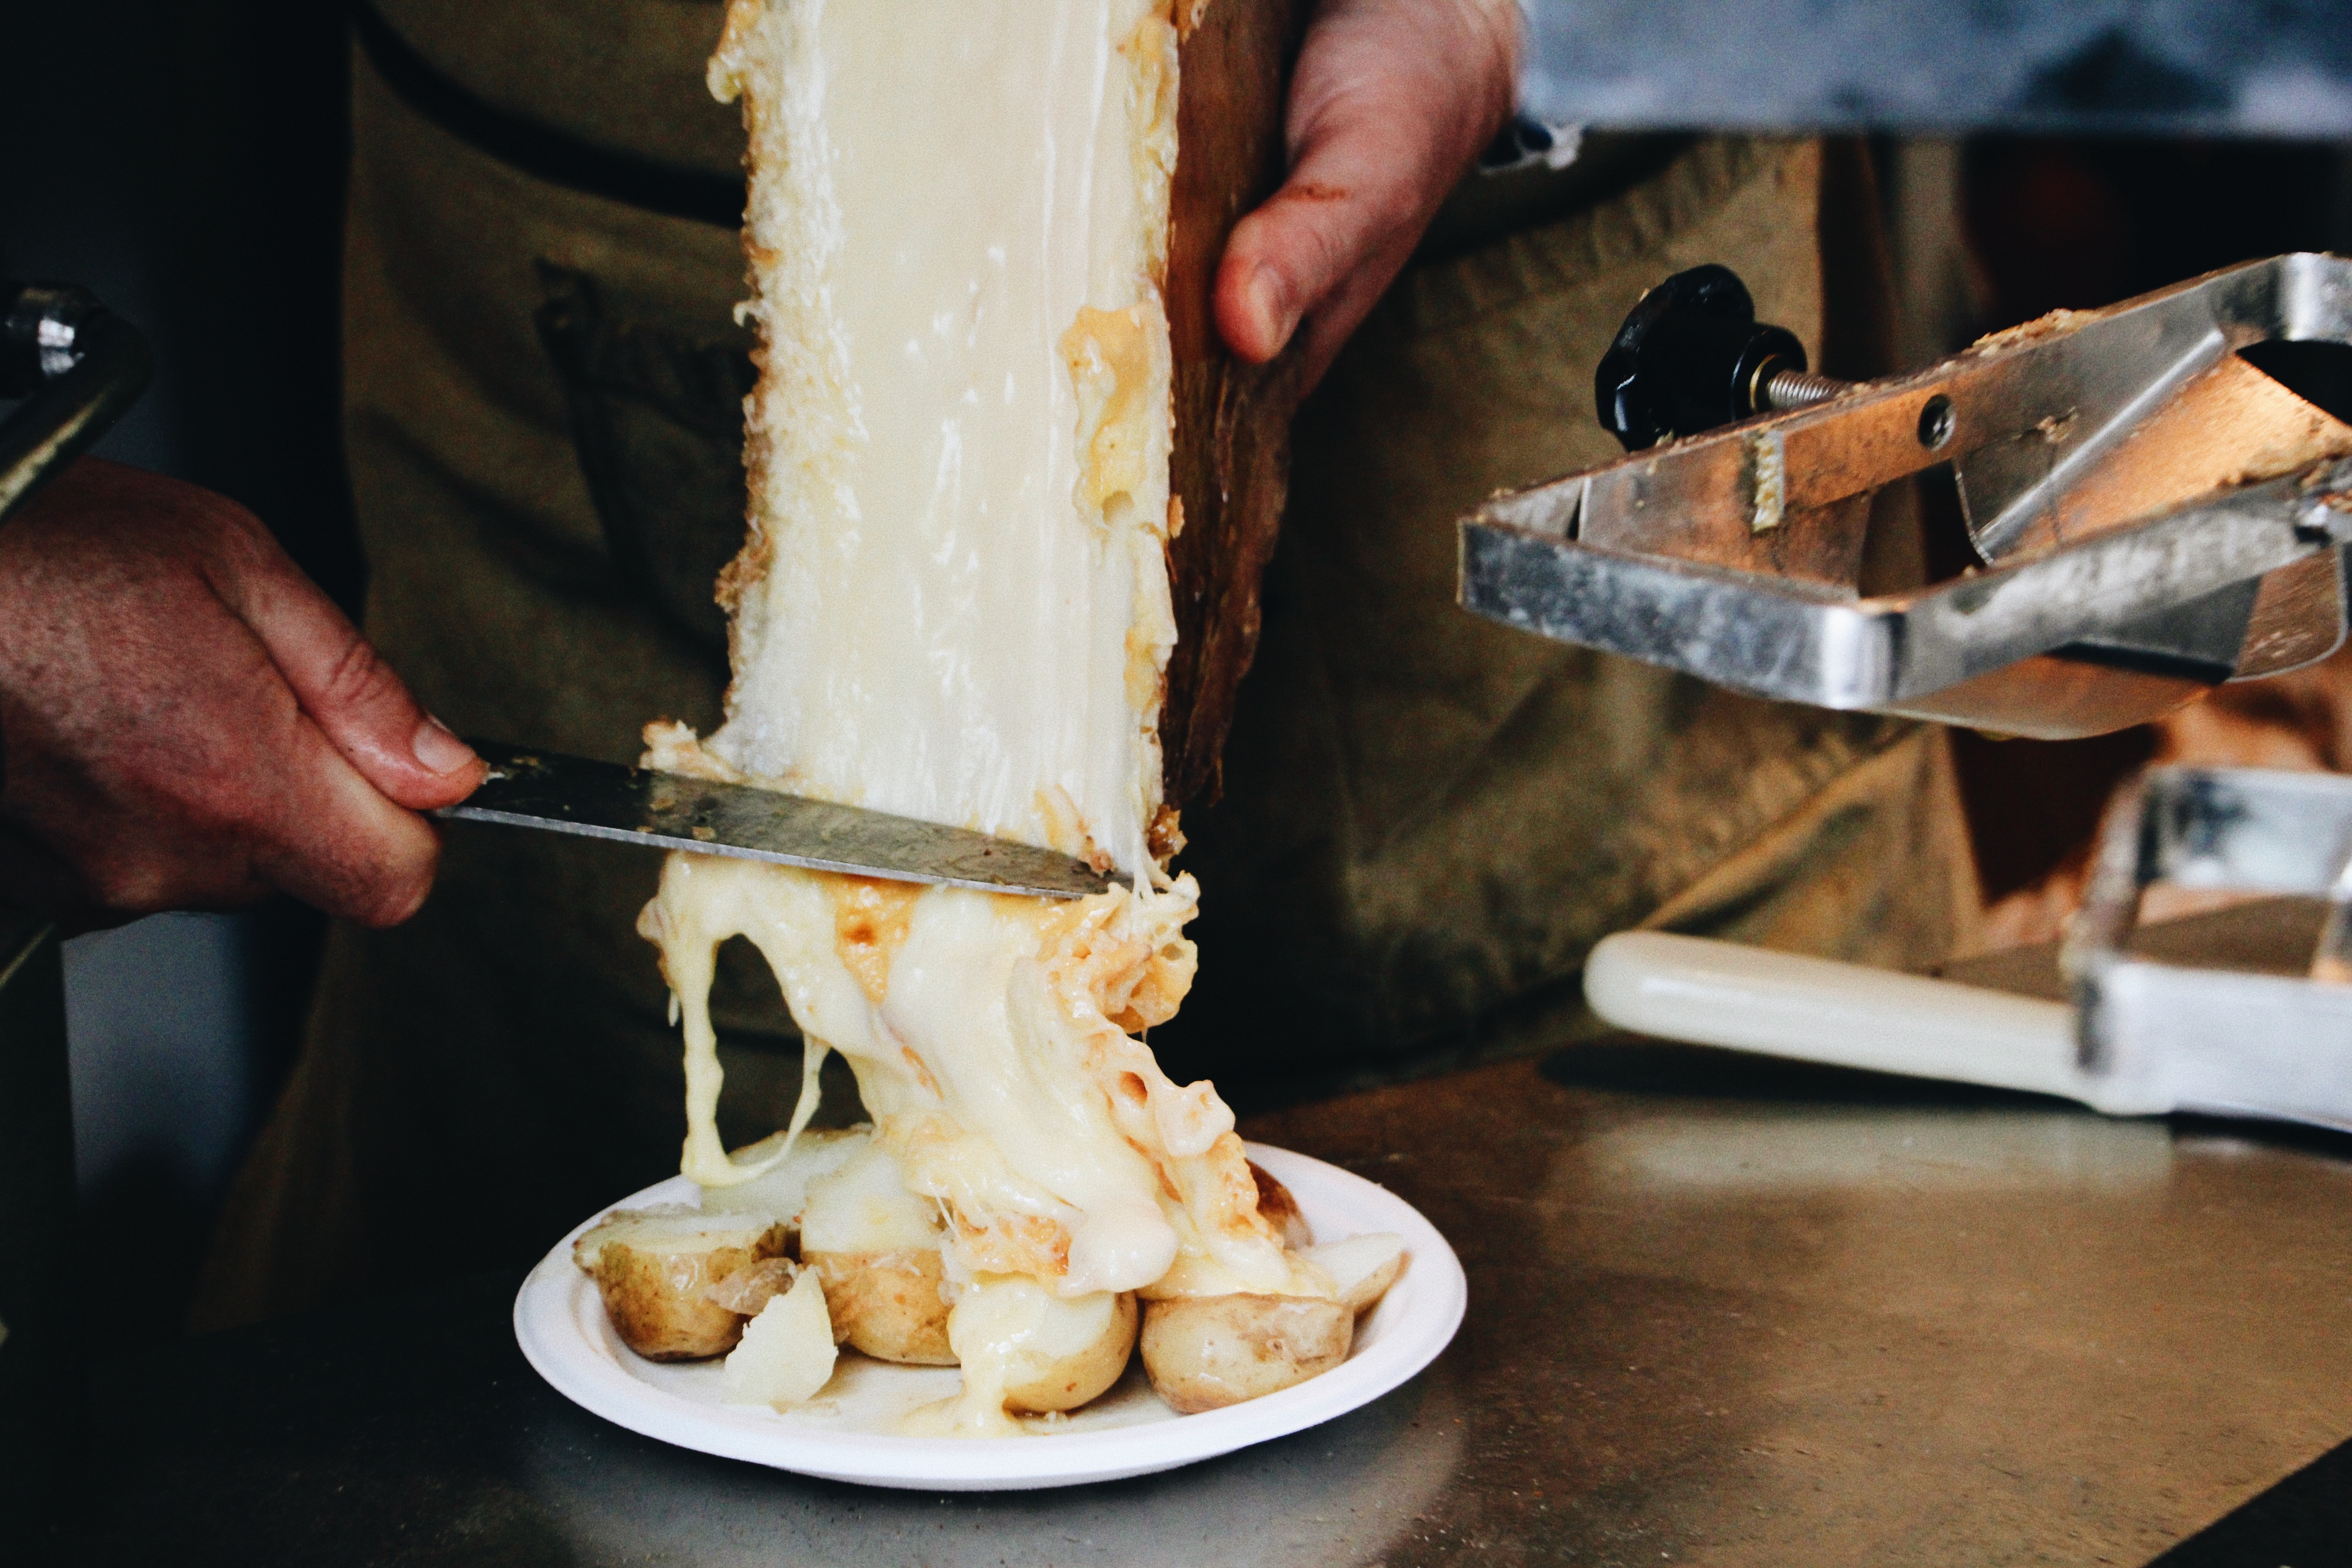 Nyúlós sajtok és remek sajtos fogások Budapesten – Raclette, fondue, érlelt sajt és különlegességek sajtimádóknak